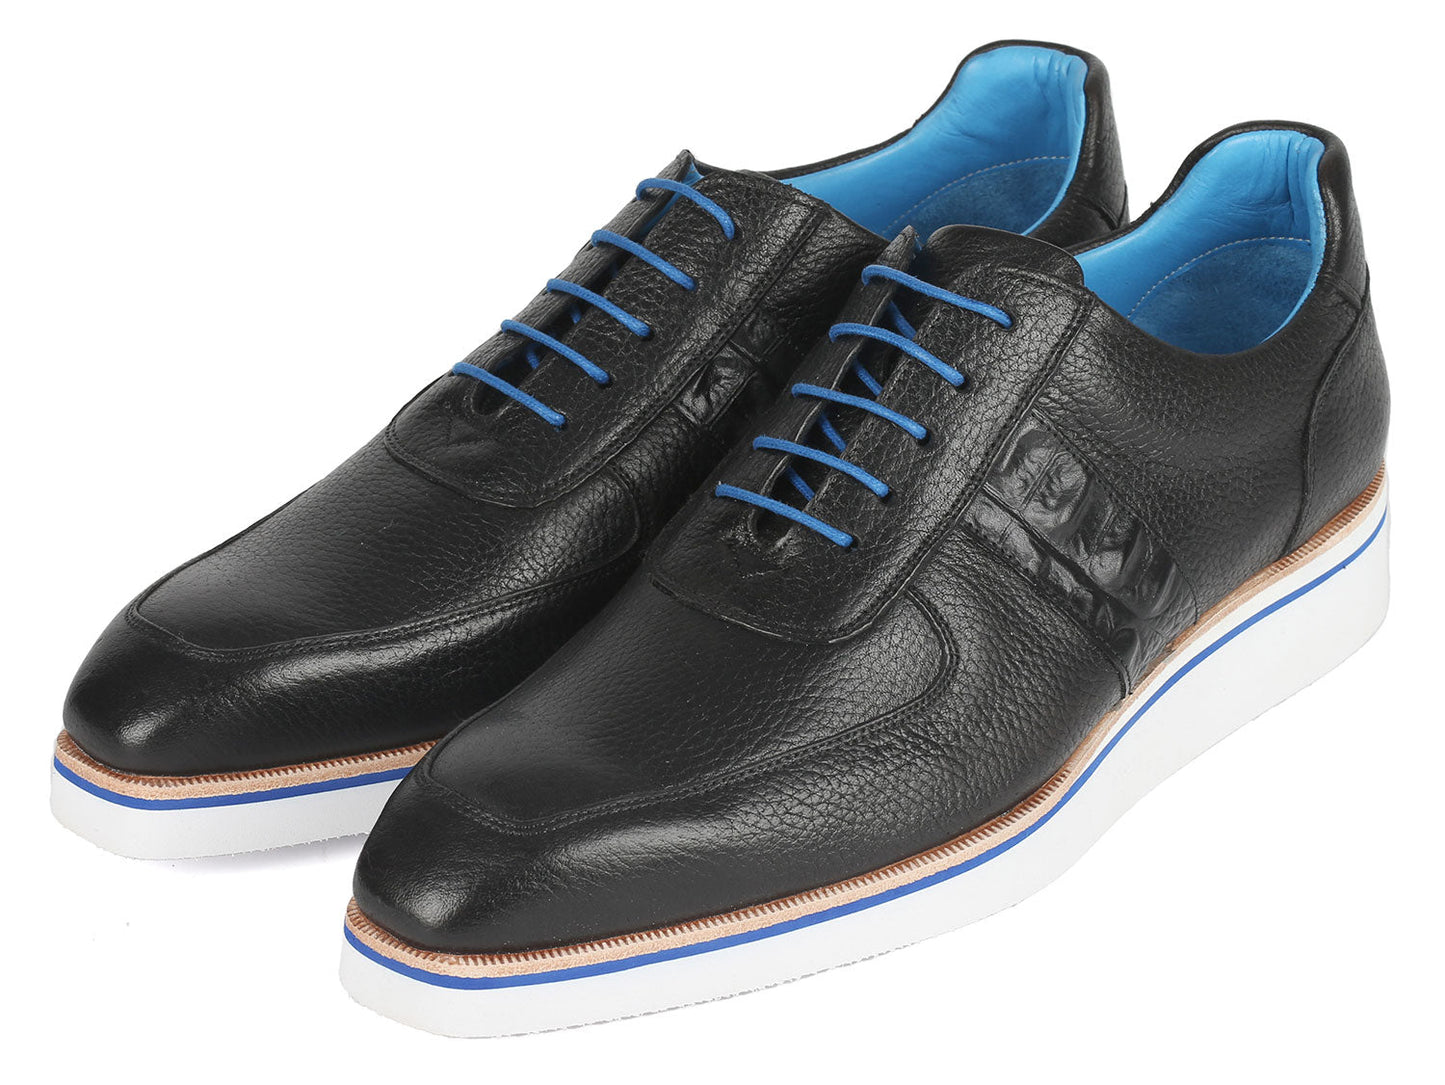 Paul Parkman Men's Casual Shoes Black Floater Leather (ID#192-BLK)